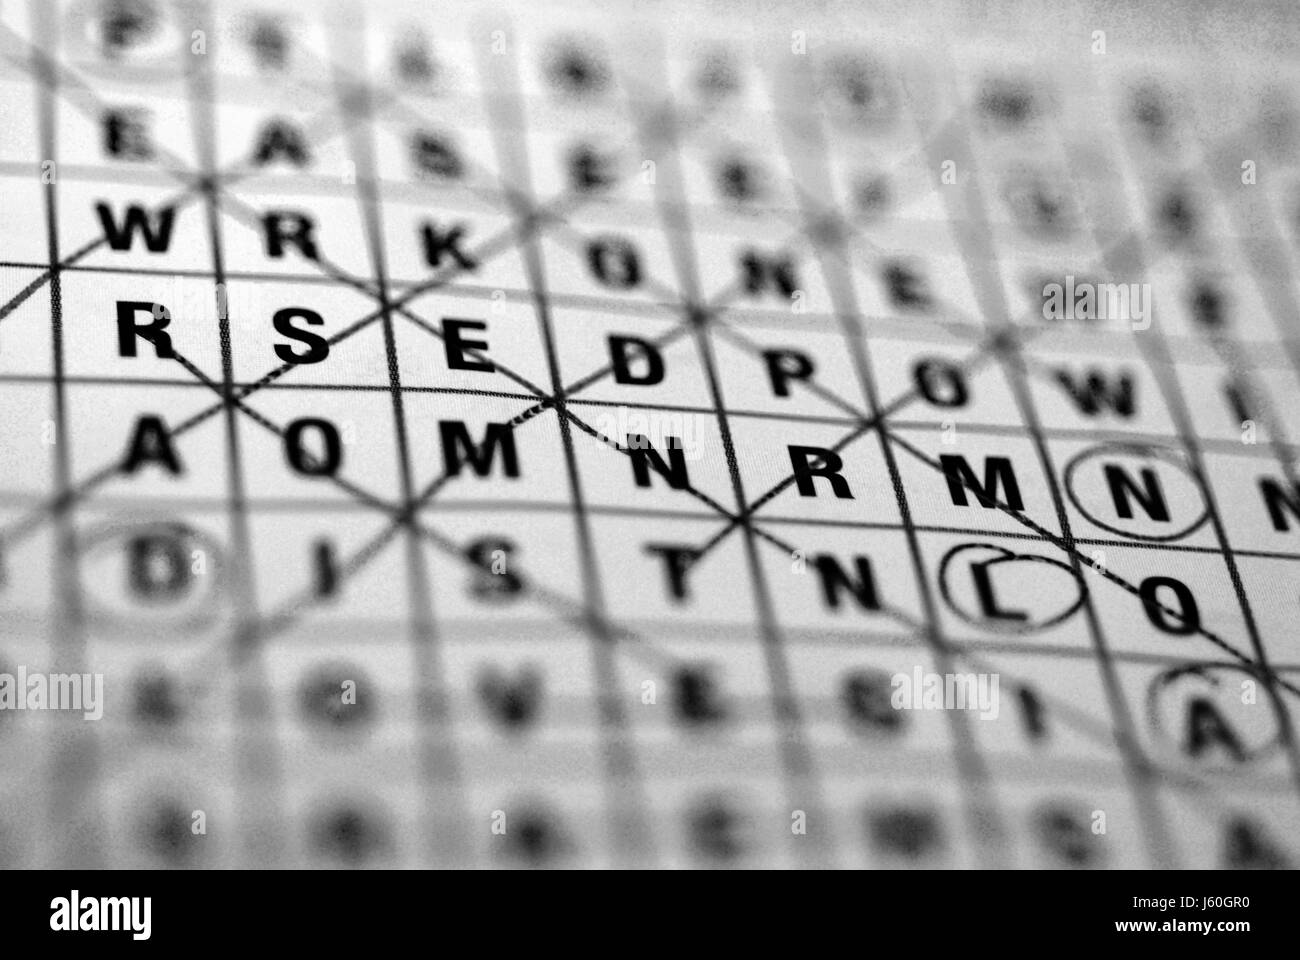 Word search puzzle de logique logique de concurrence concurrence grille grille grille Banque D'Images